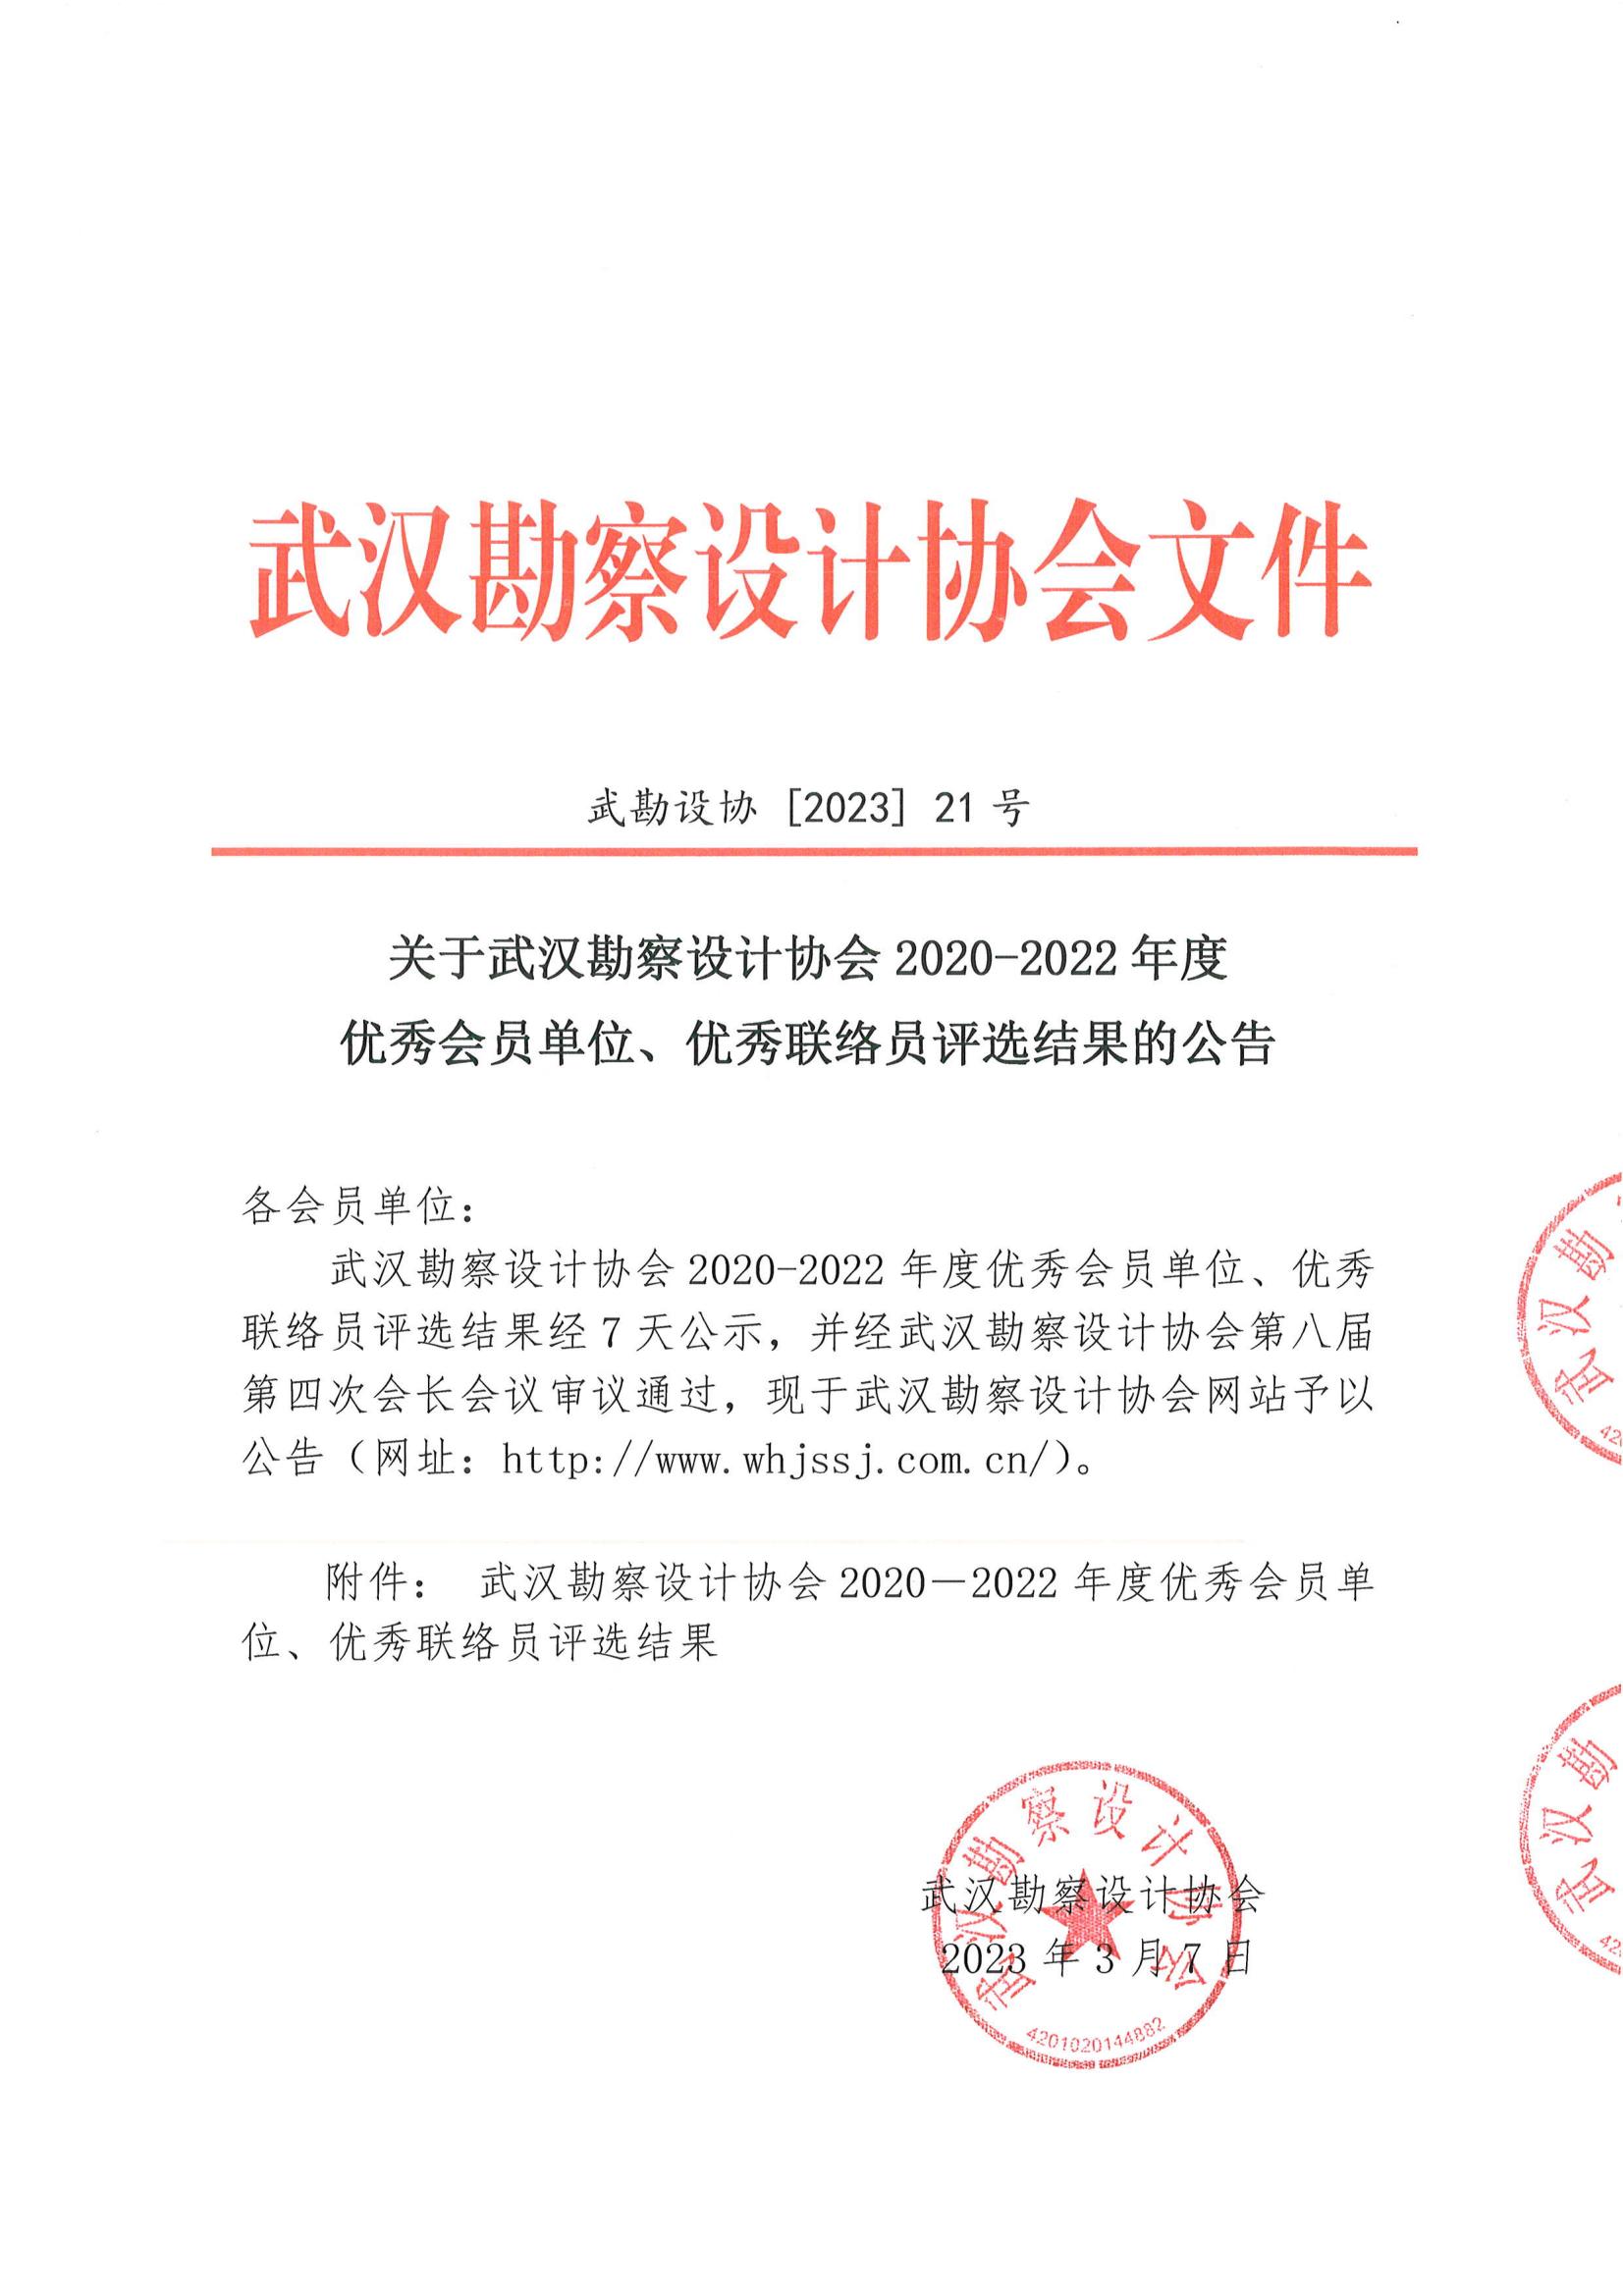 关于武汉勘察设计协会2020-2022年度优秀会员单位、优秀联络员评选结果的公告